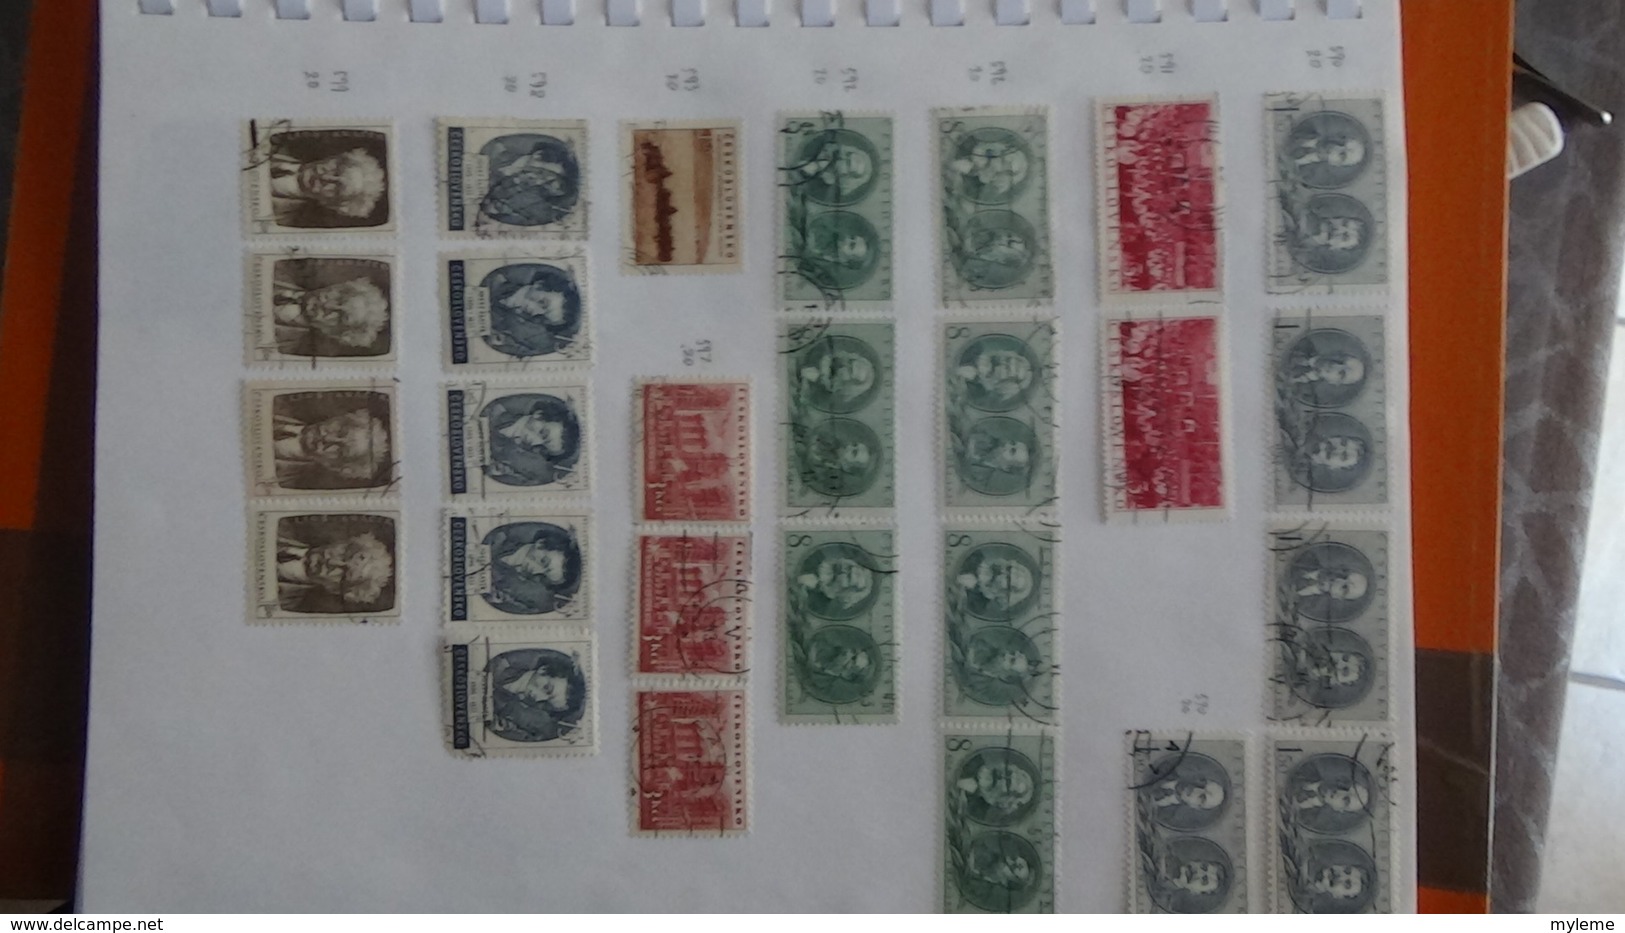 A257 Cahier de timbres de Tchécoslovaqiue et Albanie  !!! Voir commentaires